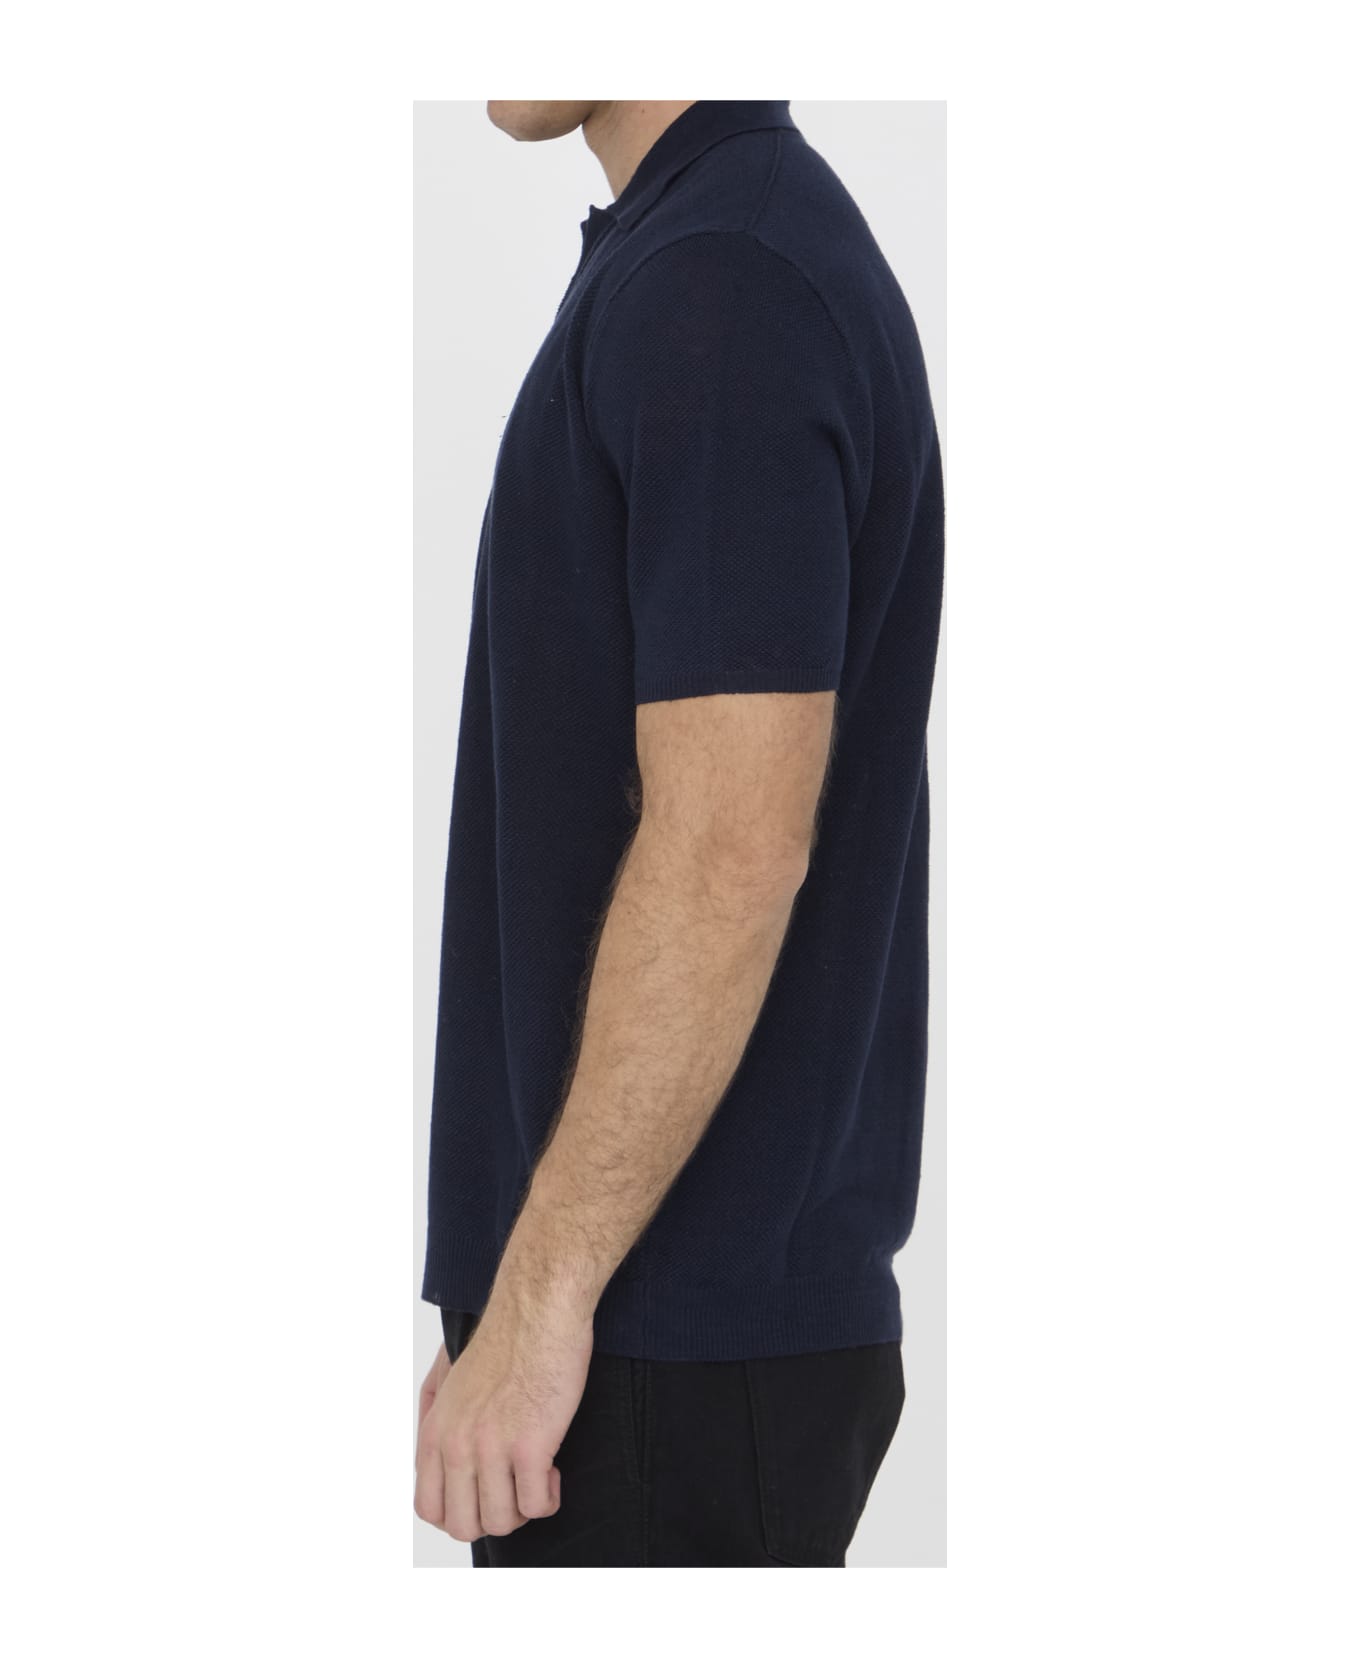 Roberto Collina Linen Polo Shirt - BLUE